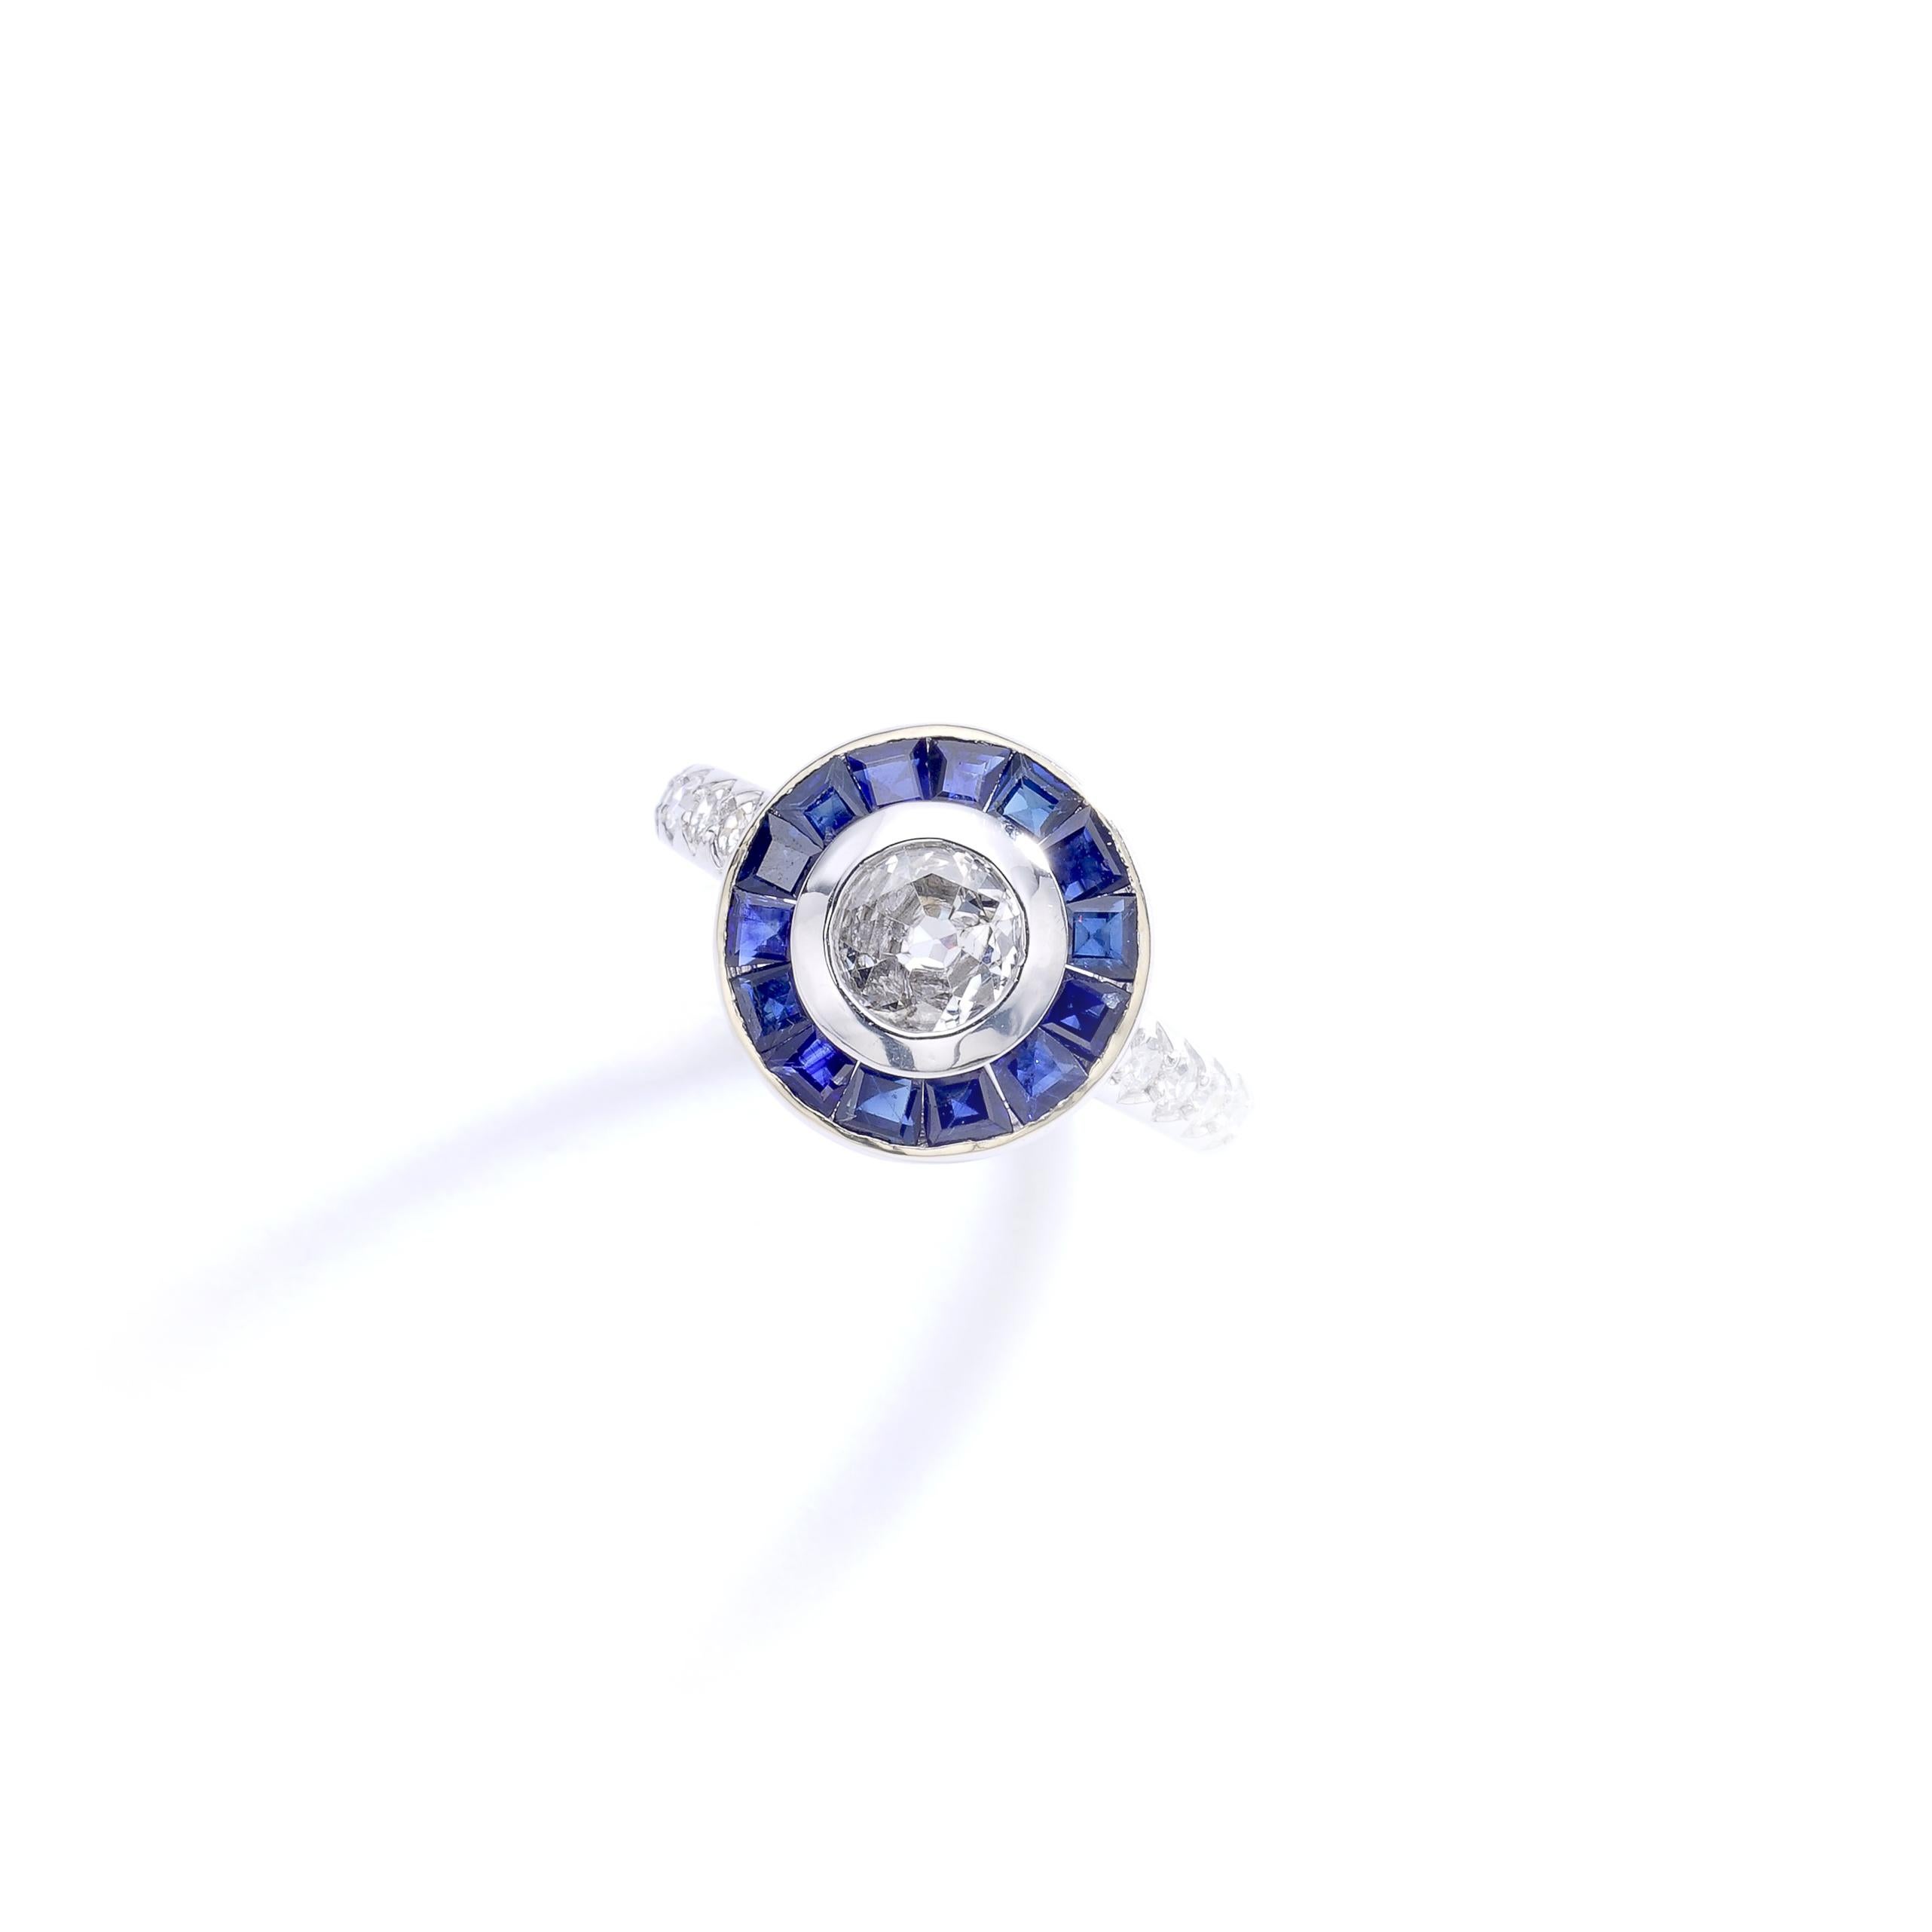 Bague contemporaine en or blanc 18k 750 centrée d'un diamant rond (environ 0,50 carat) entouré d'un saphir bleu calibré et effilé par un diamant.
Marques italiennes.

Taille de la bague : 6 1/4.